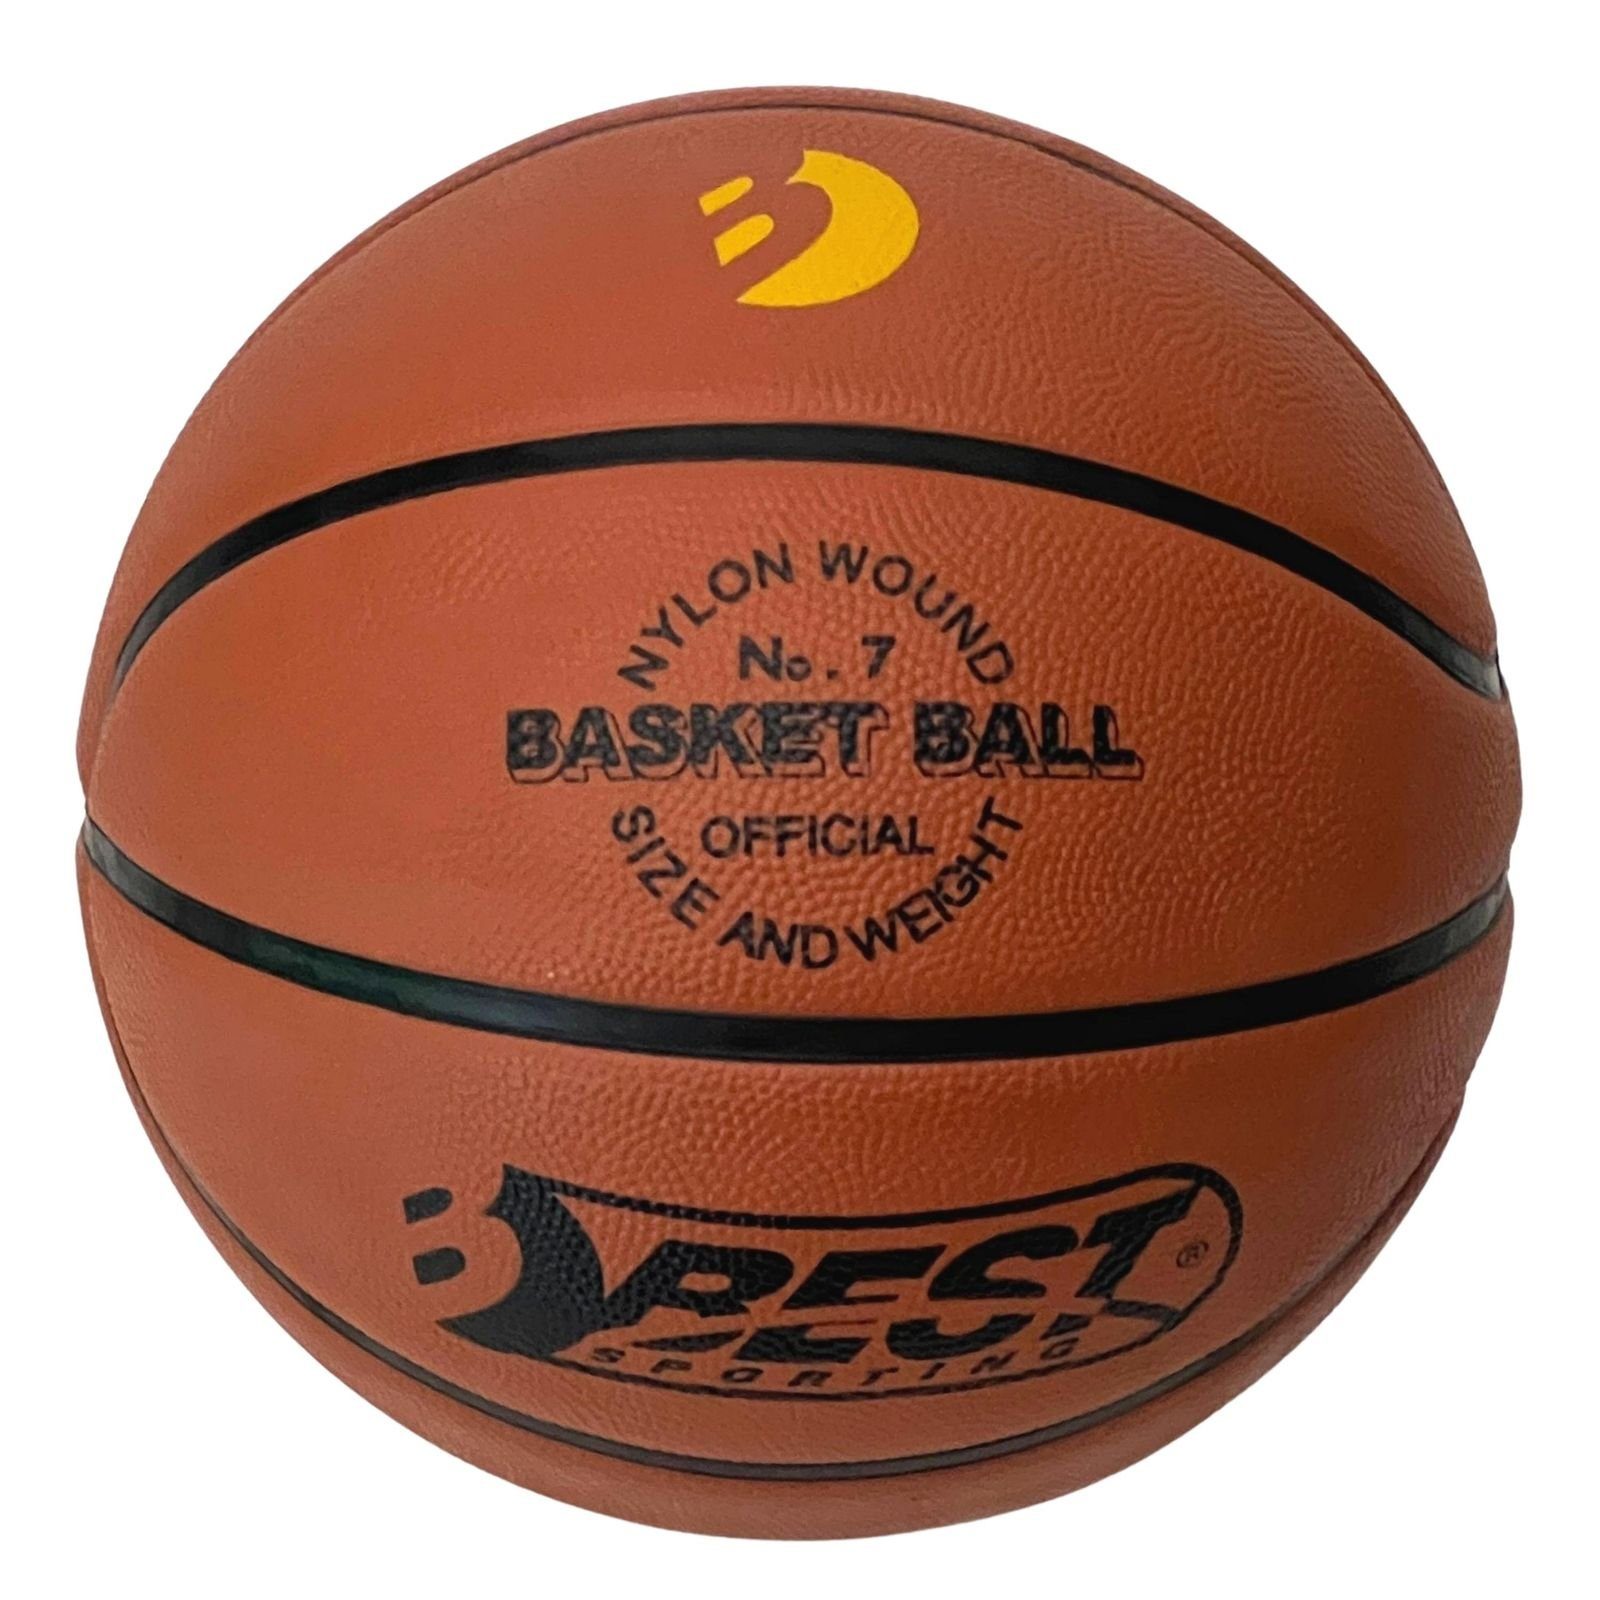 Best Basketball Größe & Outdoor Hochwertiger Basketball 7, mit Basketball Sporting offiziellem Gewicht Größe